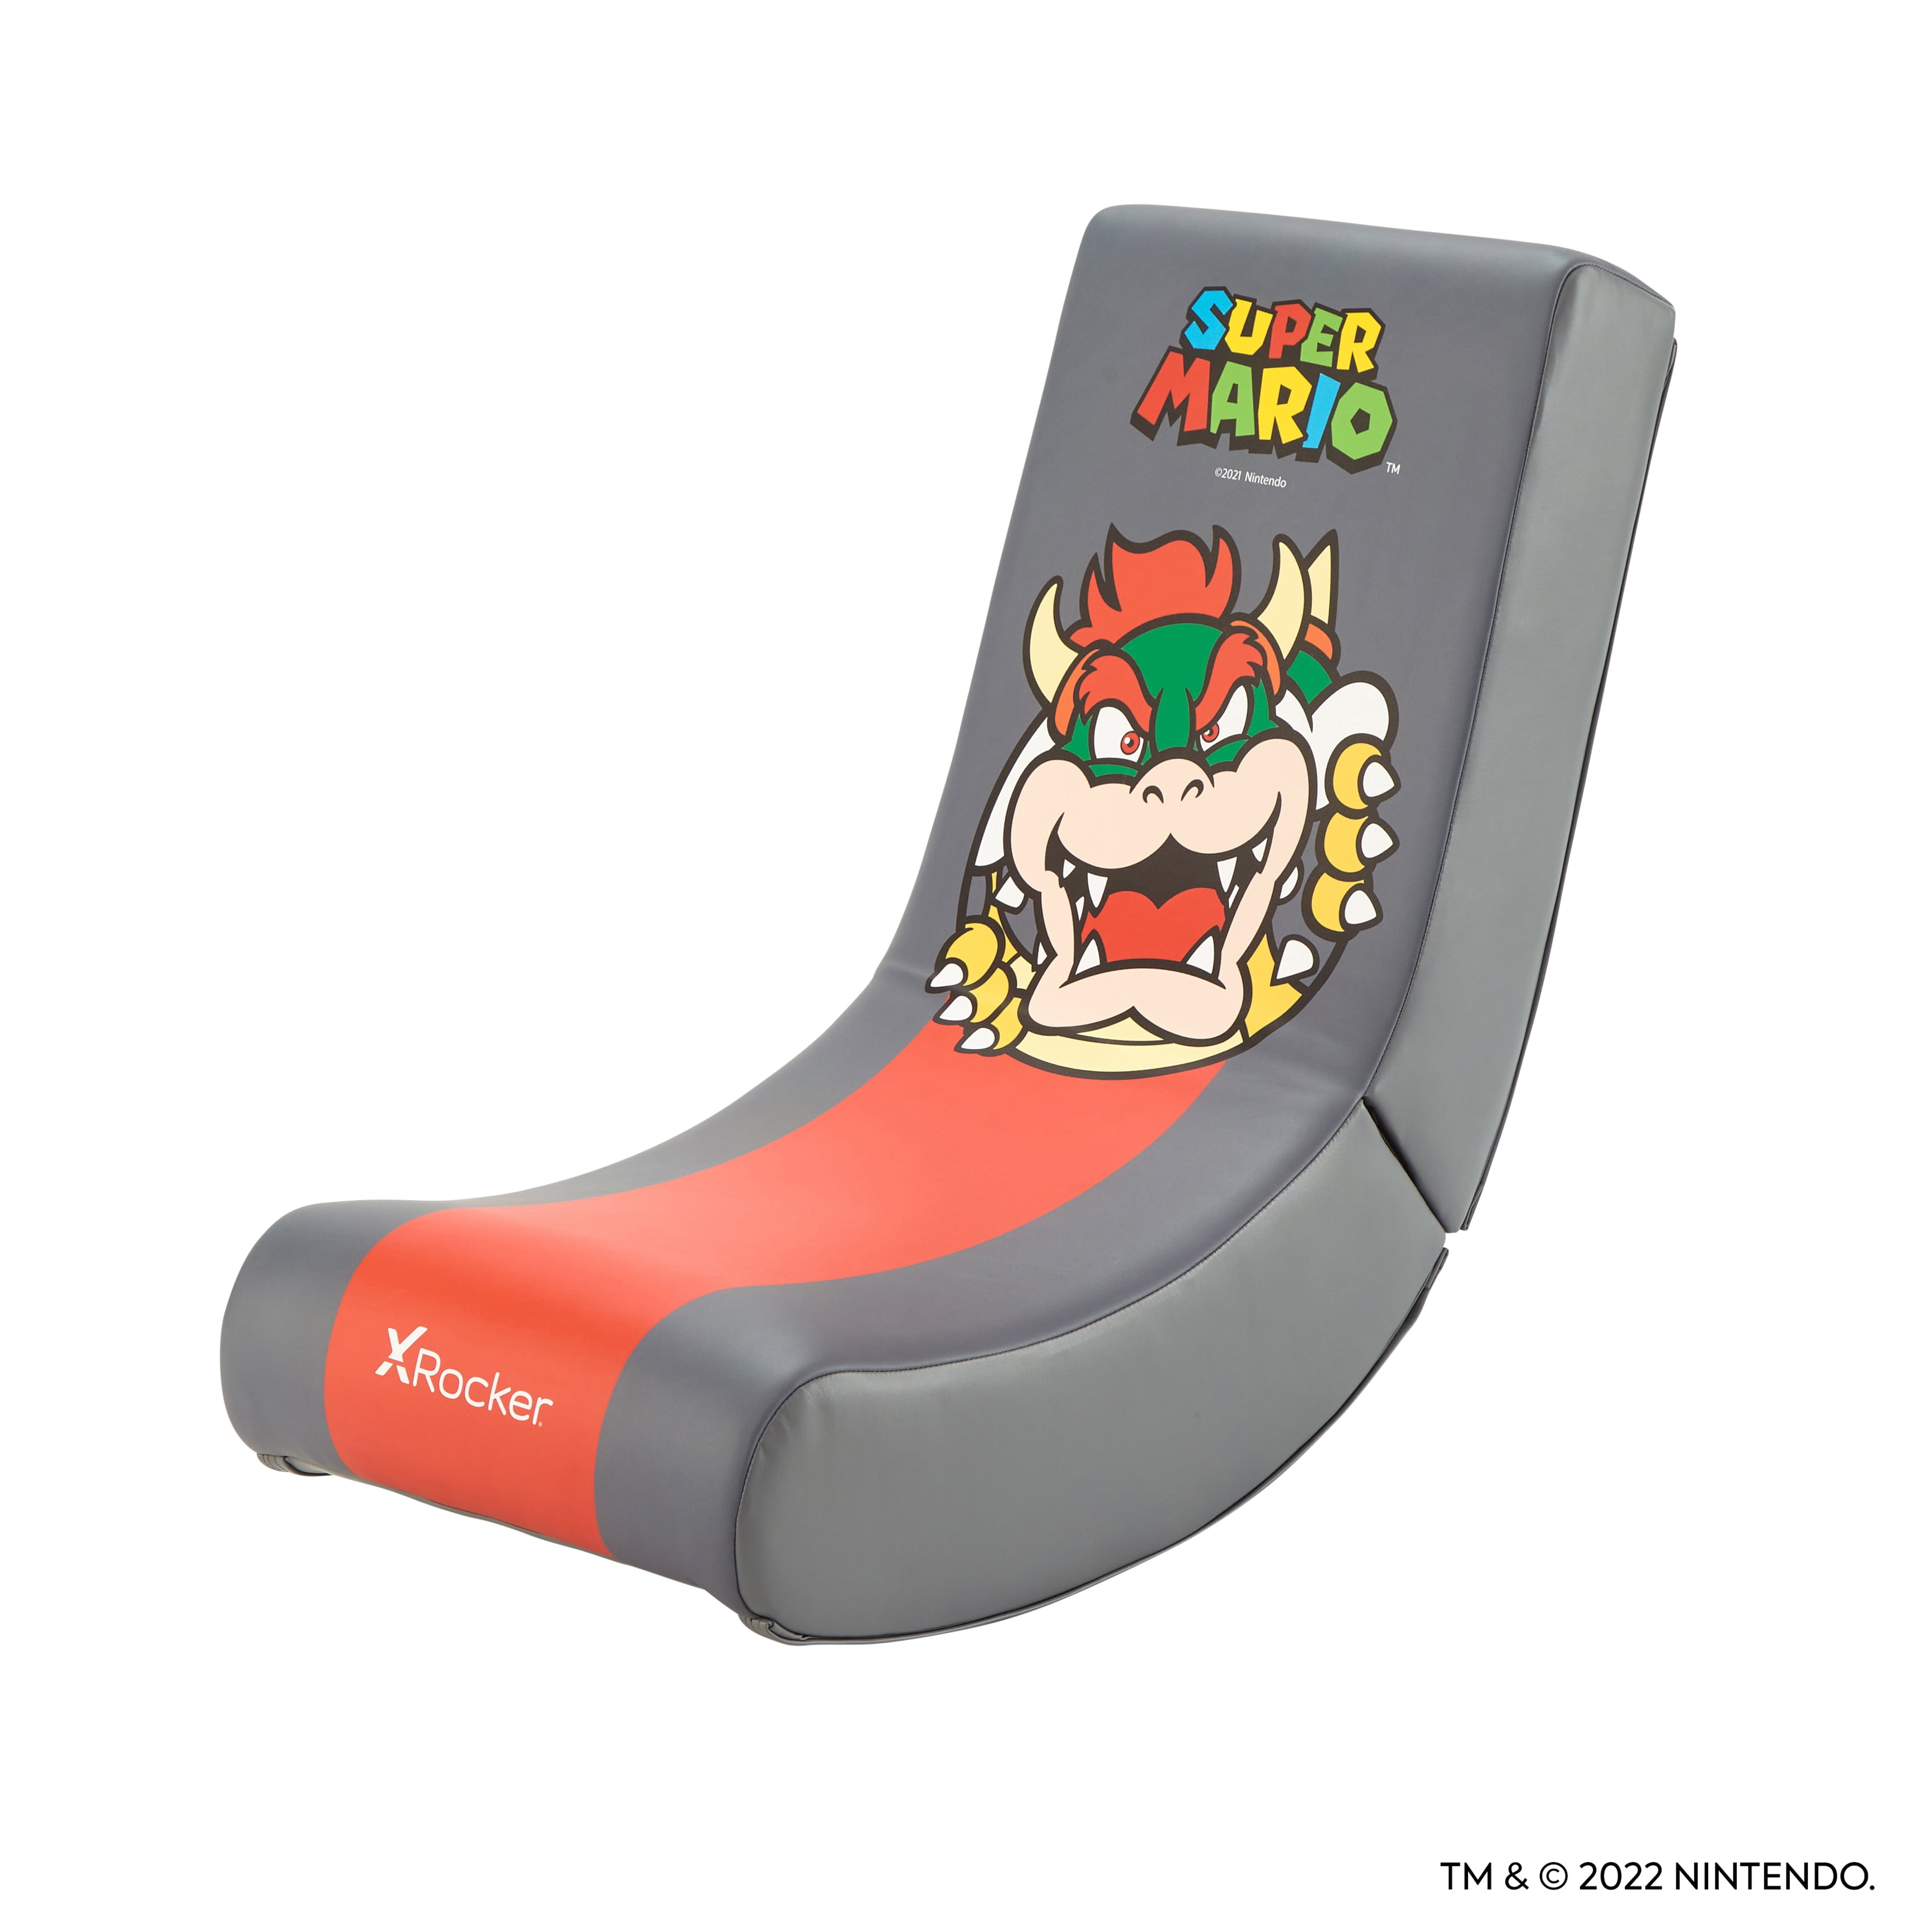  X Rocker Super Mario Peach - Silla de suelo para videojuegos,  edición oficial All-Star coleccionable de Nintendo, piel sintética,  plegable, 33.46 x 16.14 x 25.59 pulgadas, rosa melocotón princesa : Hogar y  Cocina